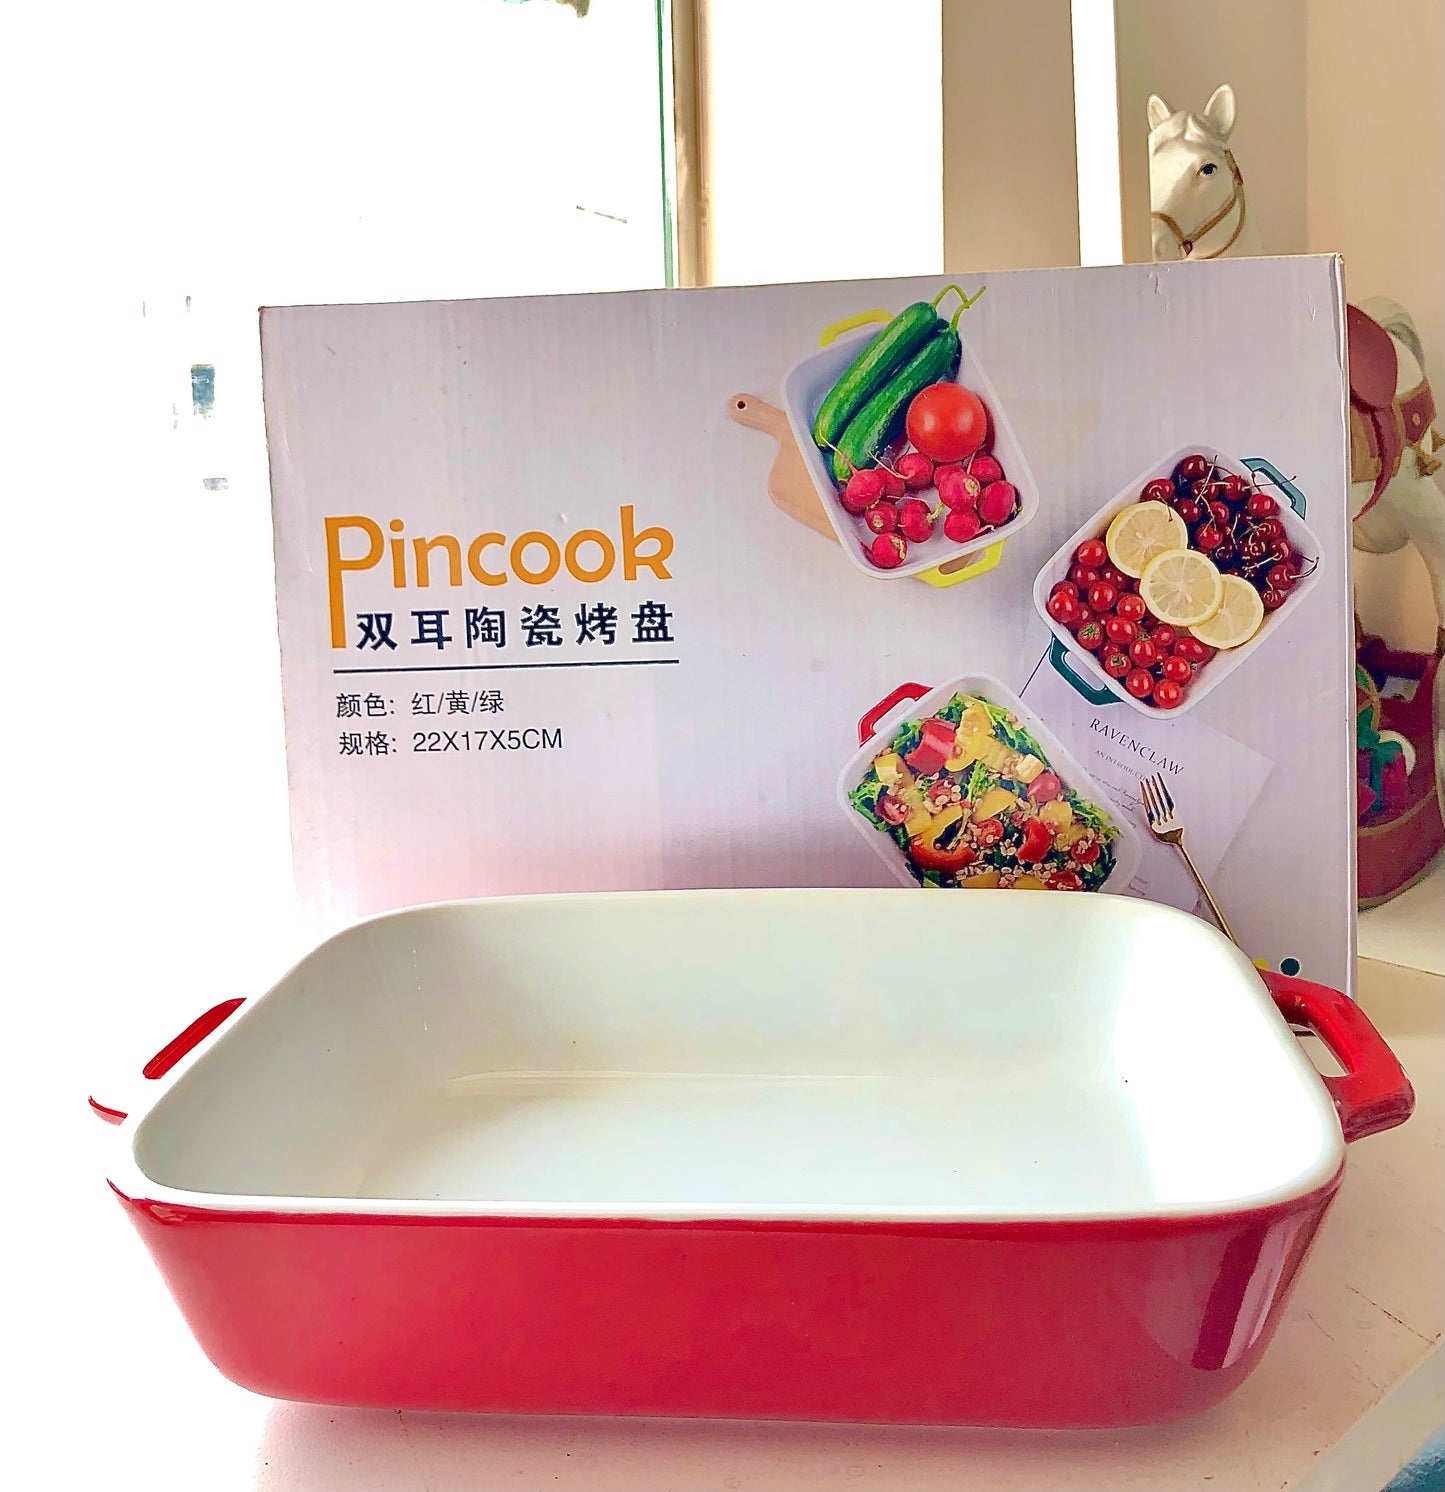 Pincook Dish Pot